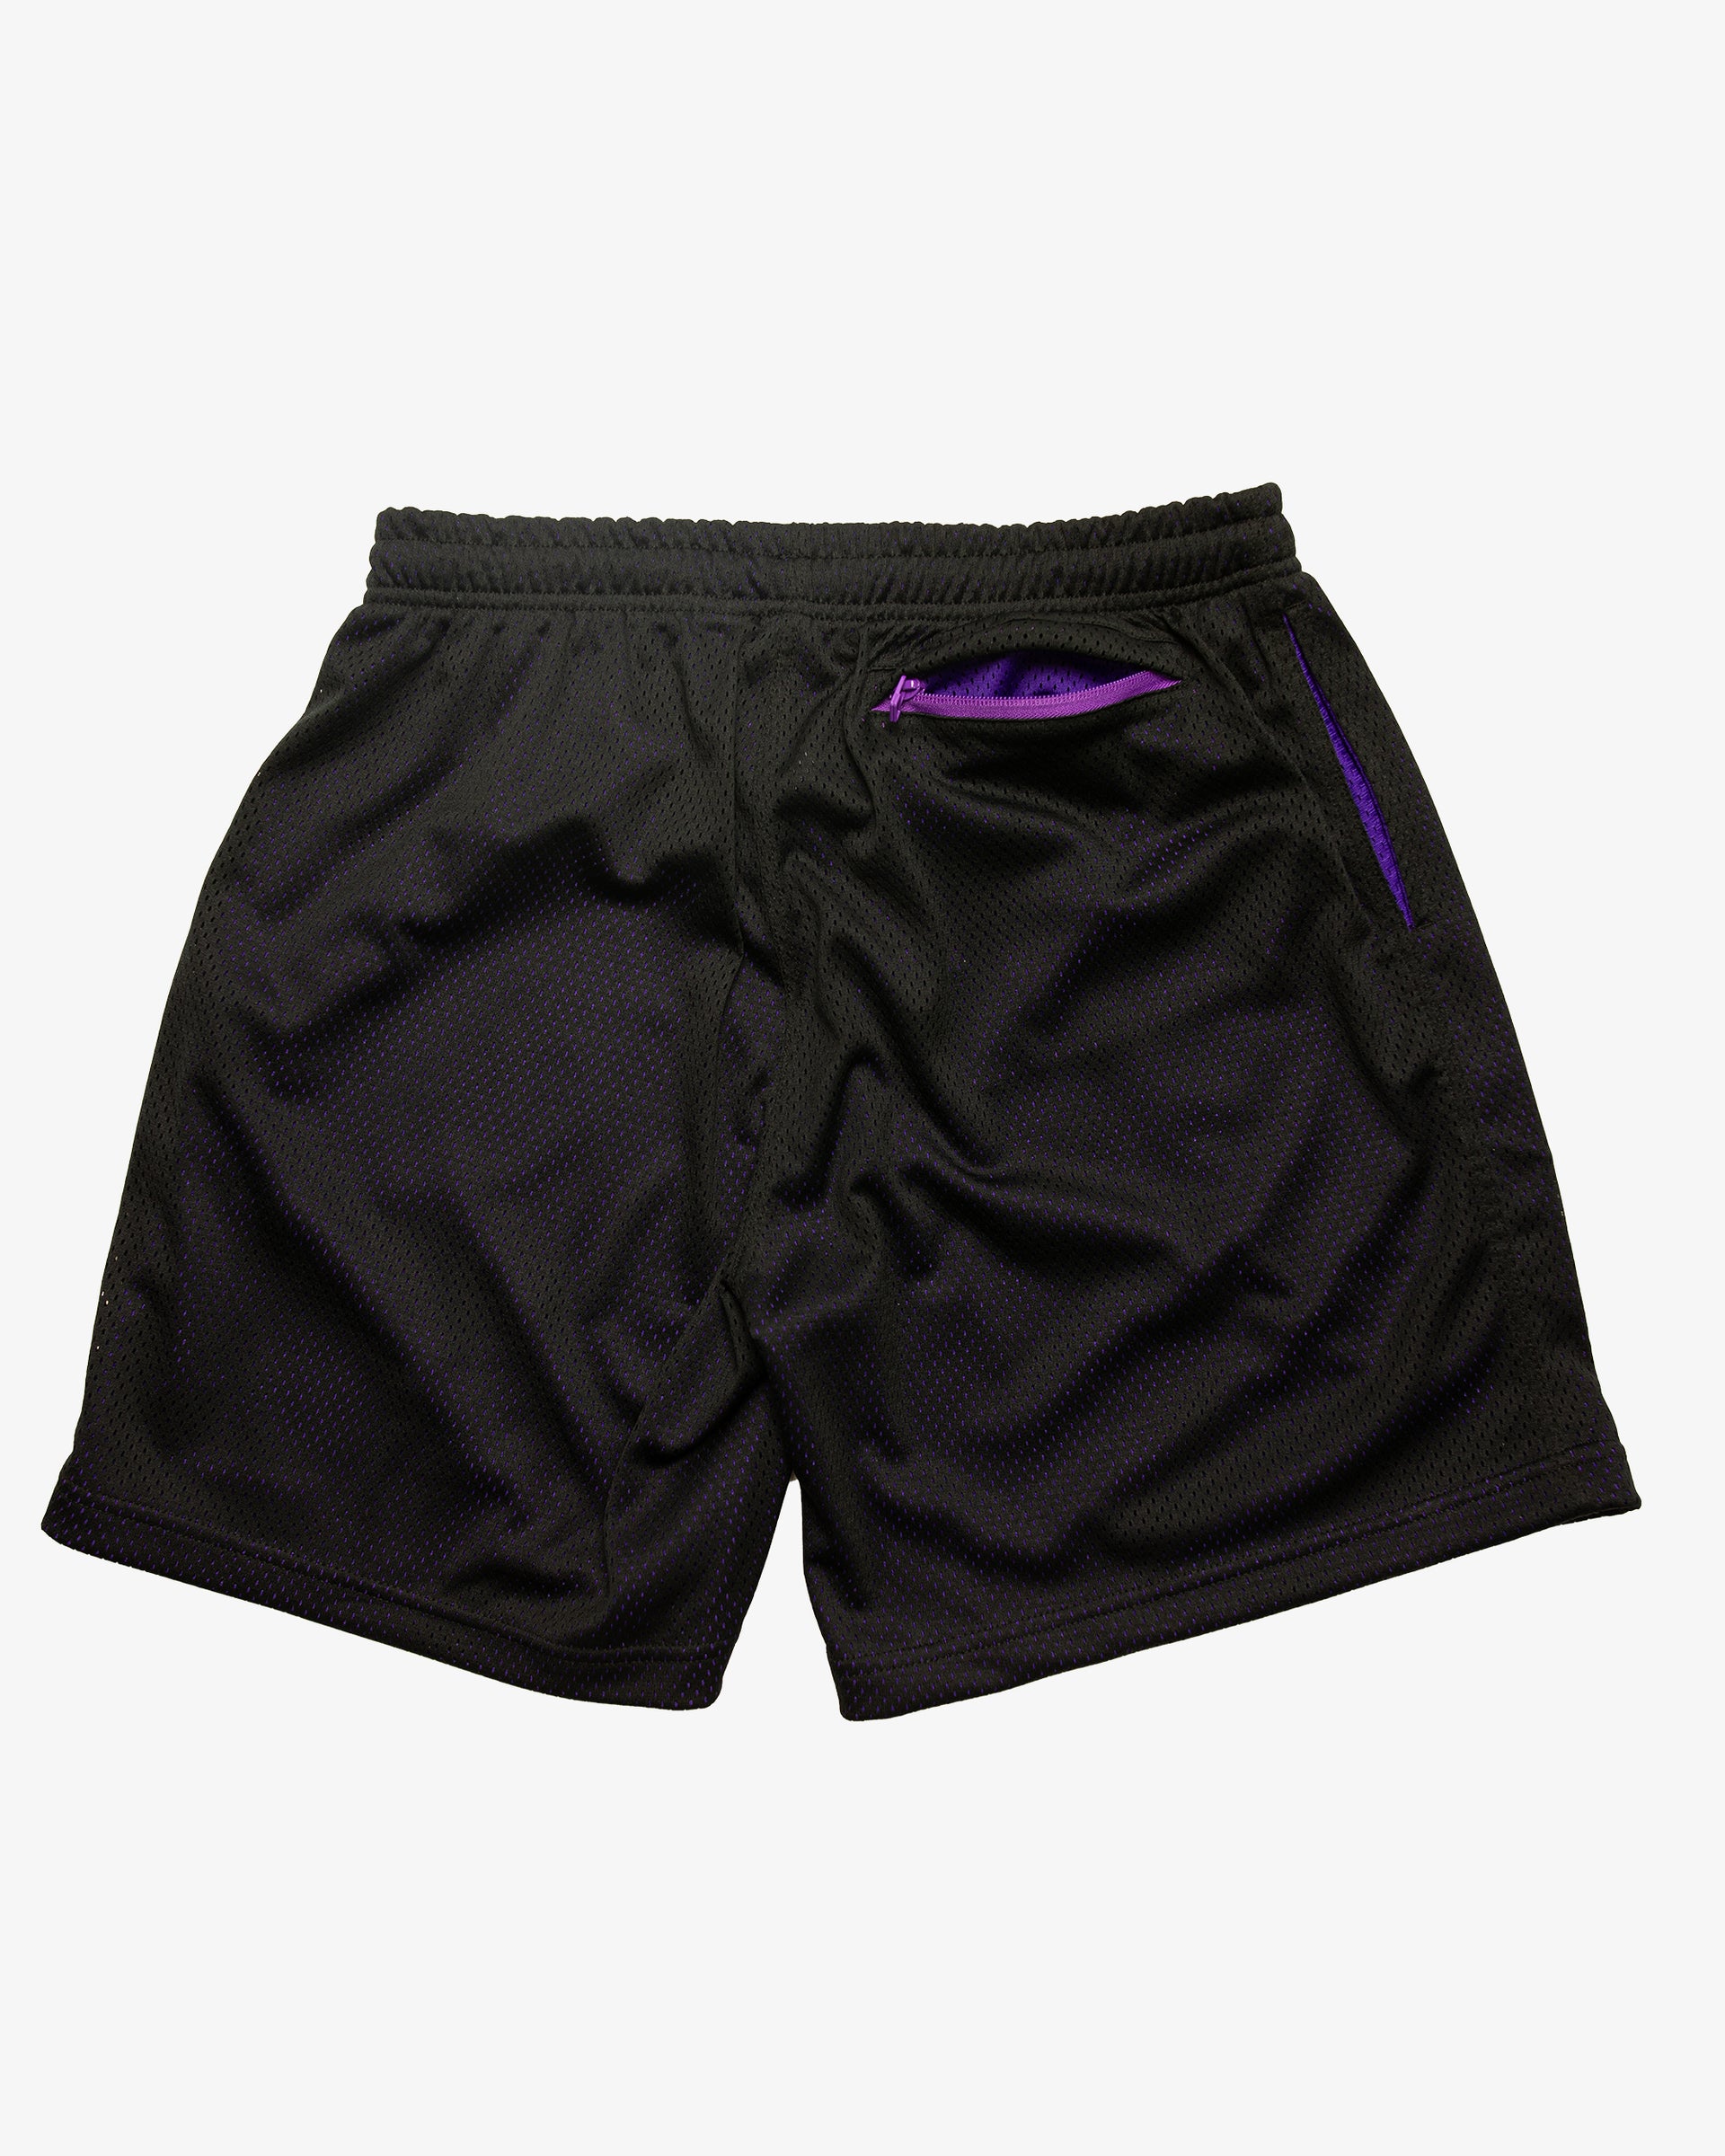 Two-Tone Mesh Shorts - Black/Purple